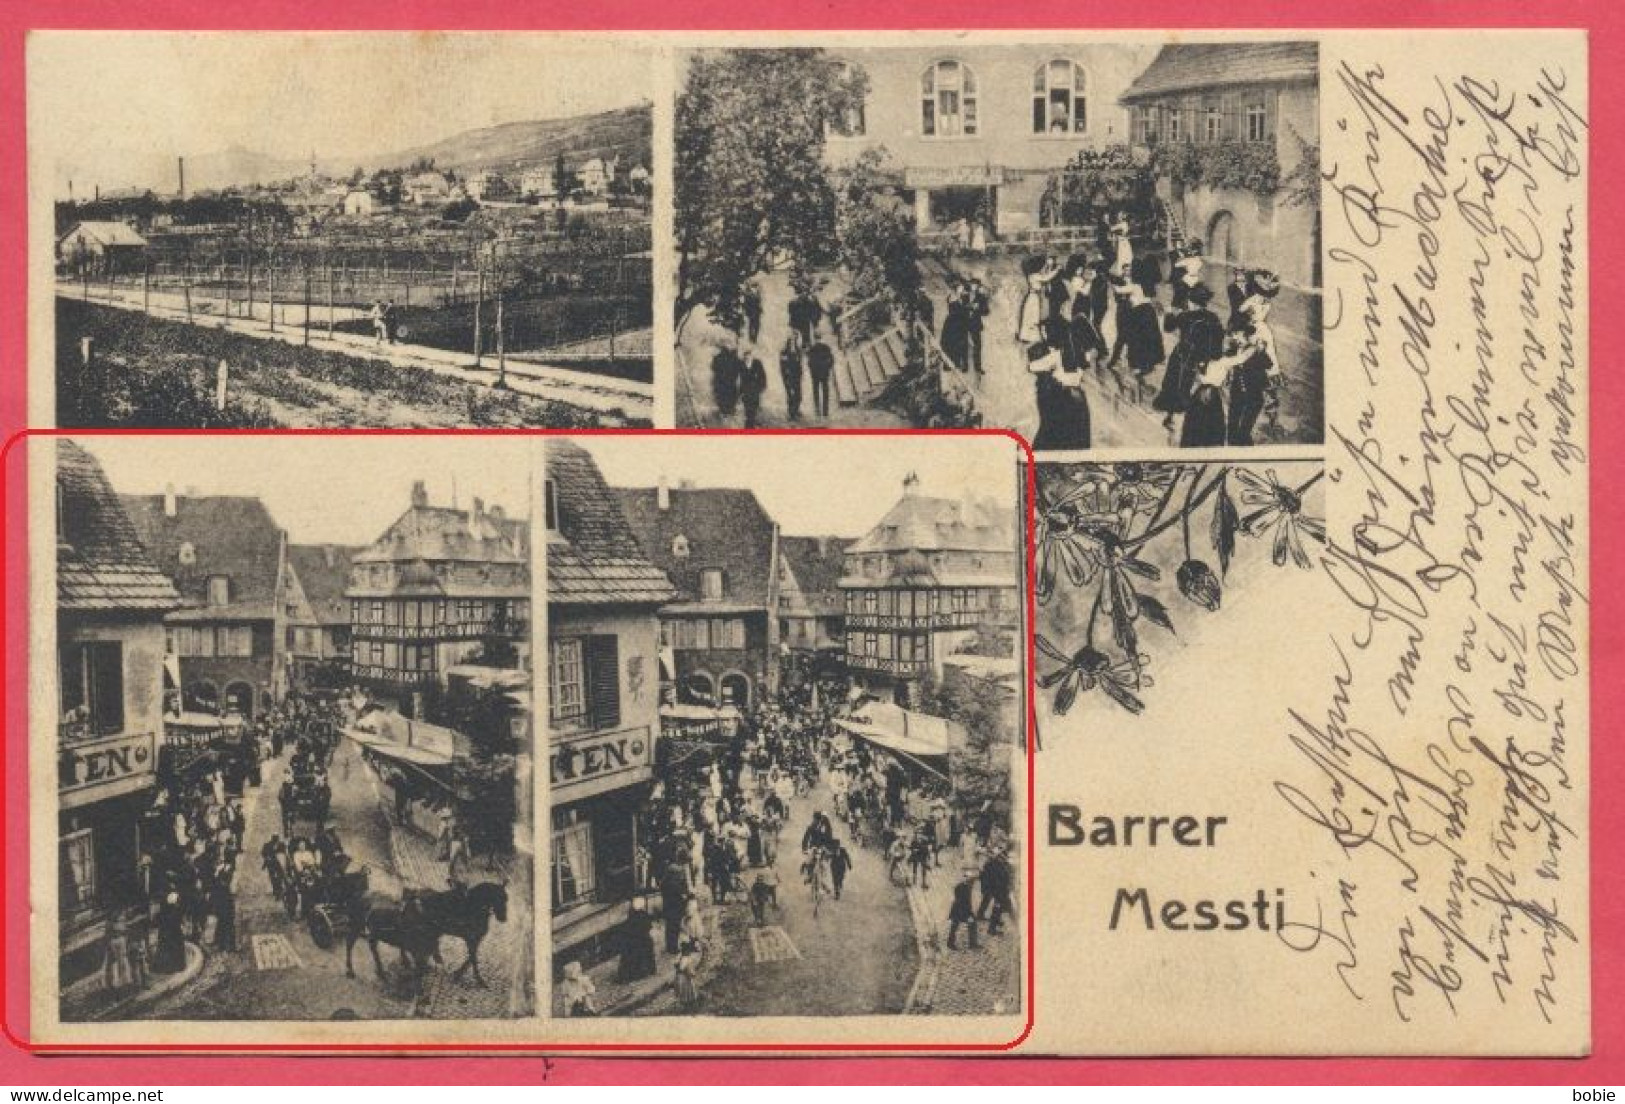 Barr - Bas-Rhin Alsace : Barrer Messti - Fête Et Folklore Alsacien - Défilés Dans Les Rues  / Timbre Et Cachet Annexion. - Barr